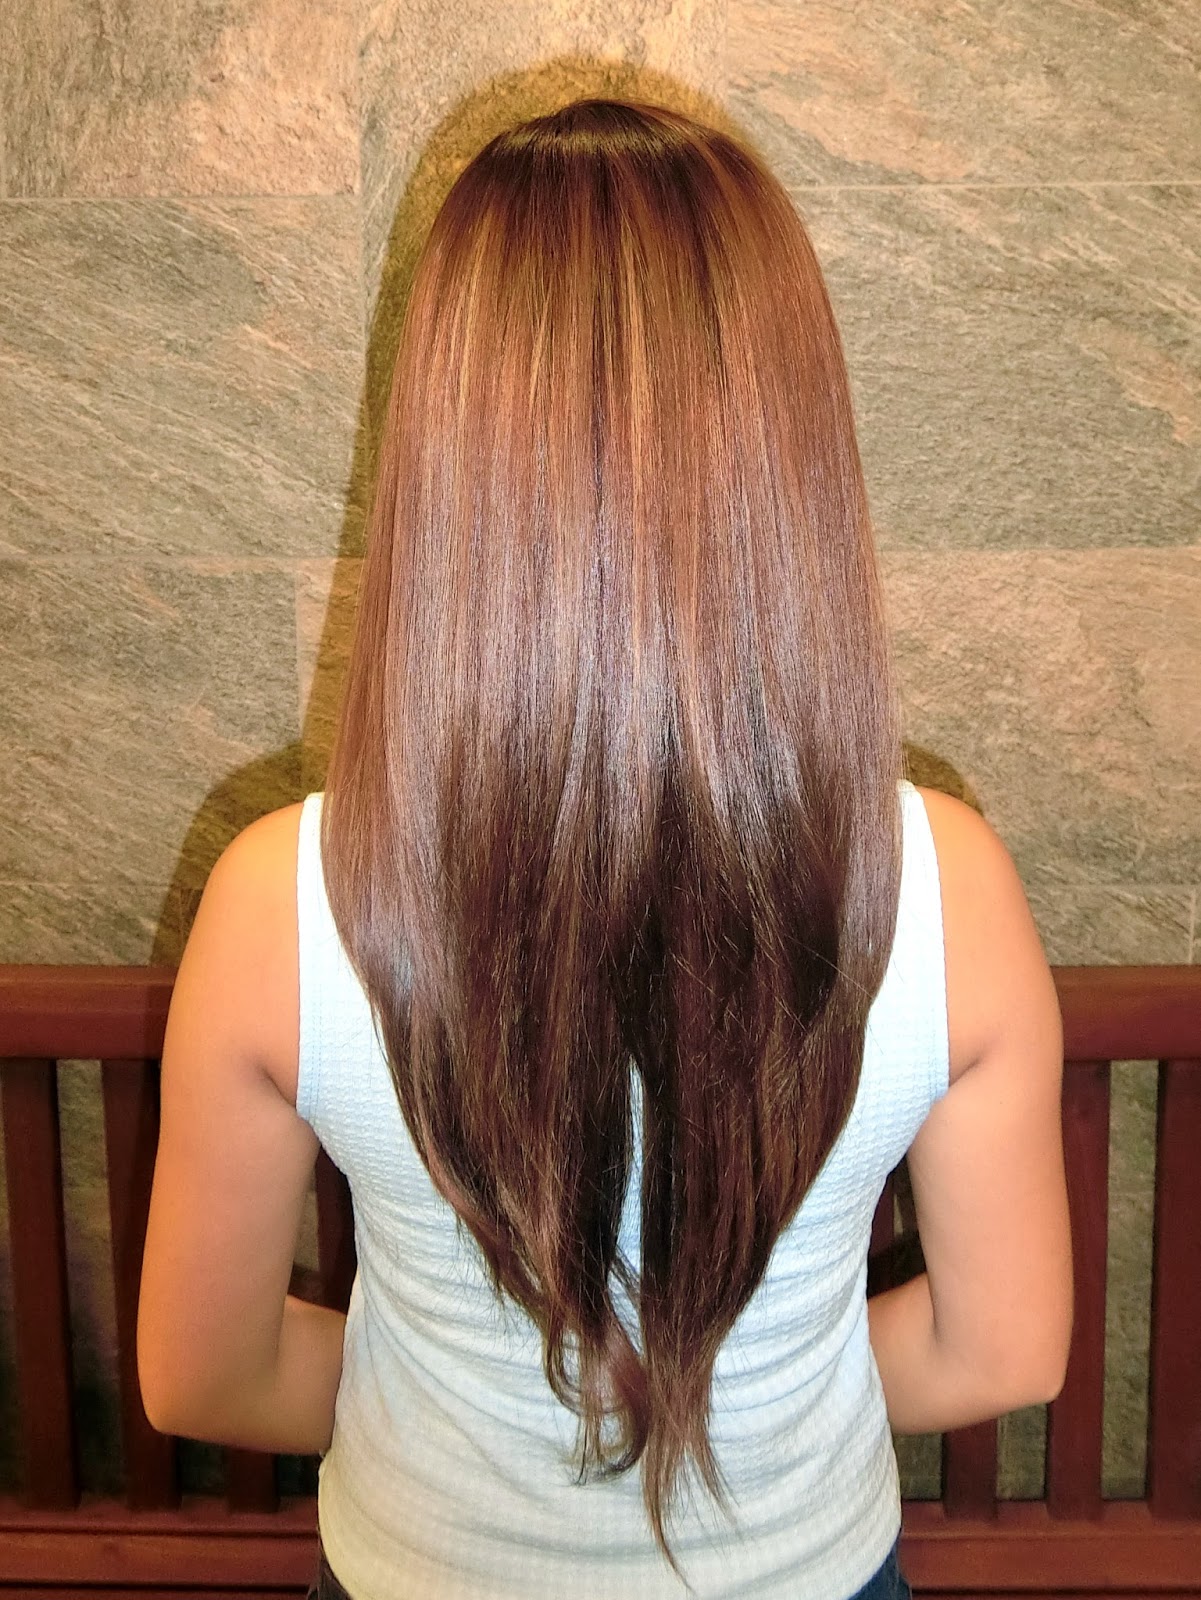 Real Asian Beauty: Hair Rebonding at Cedar Salon